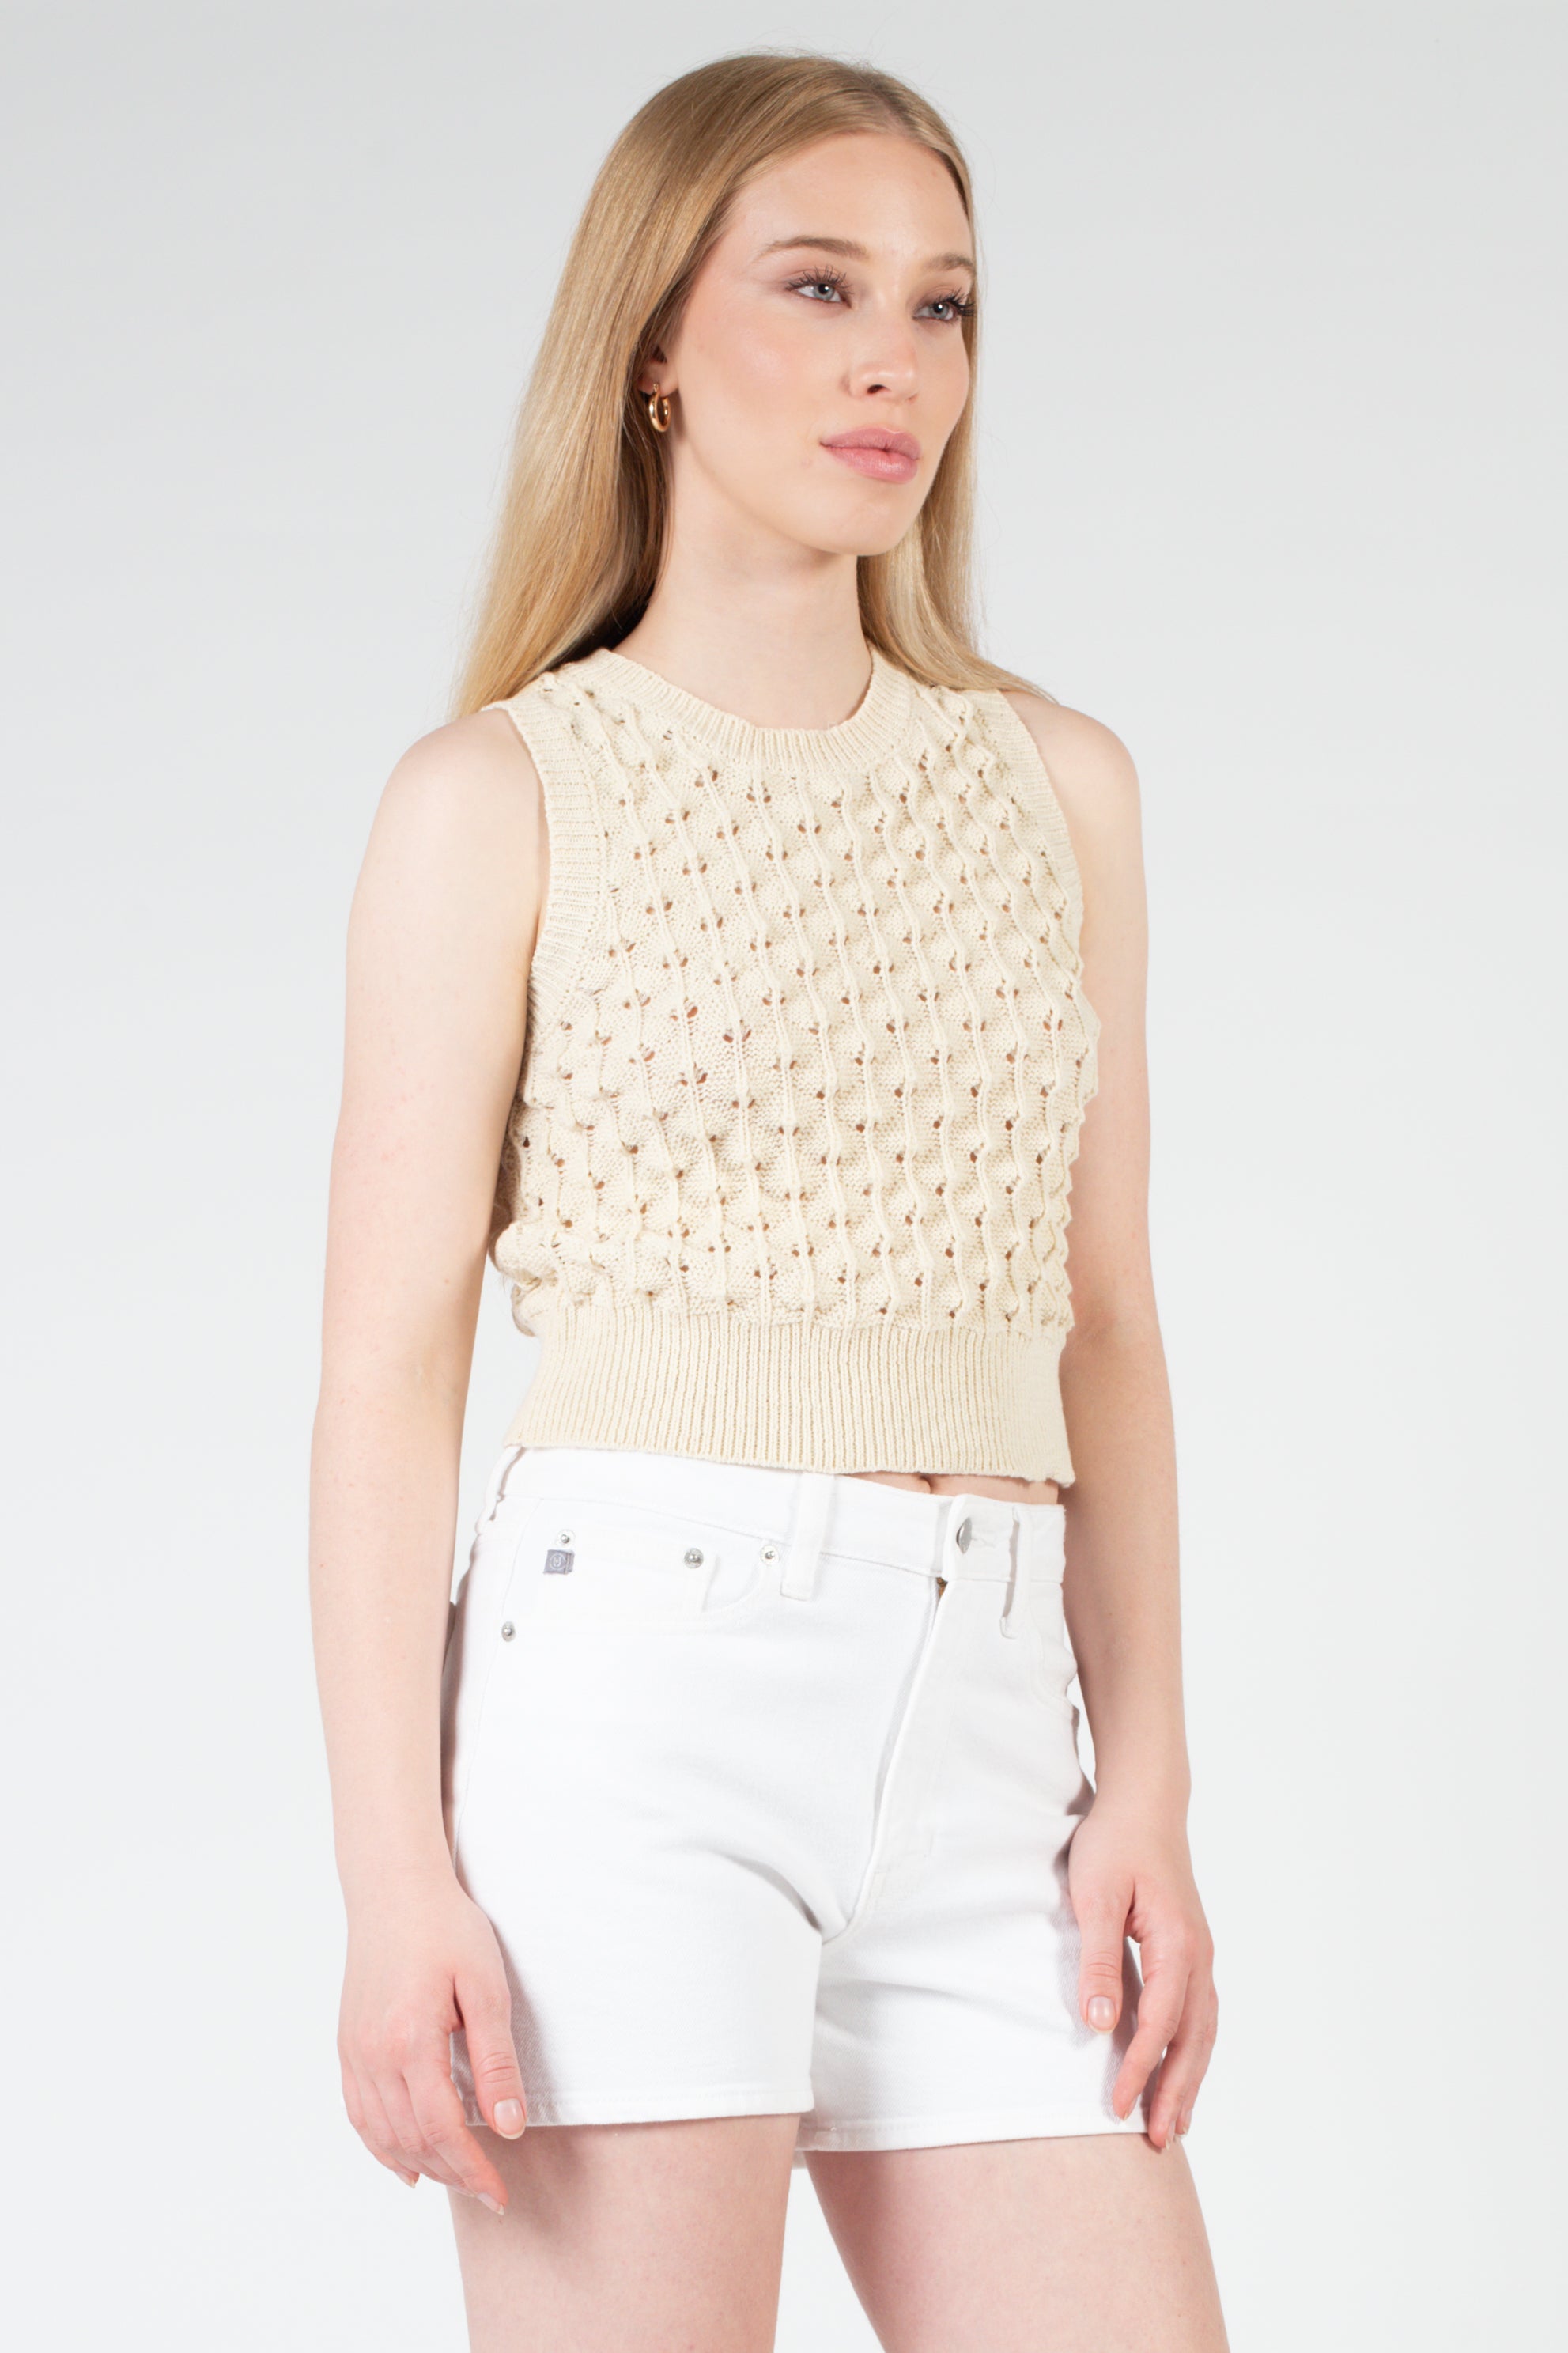 Denim Skirts - Buy Denim Skirts / Jean Skirts for Women online at best  prices - Flipkart.com